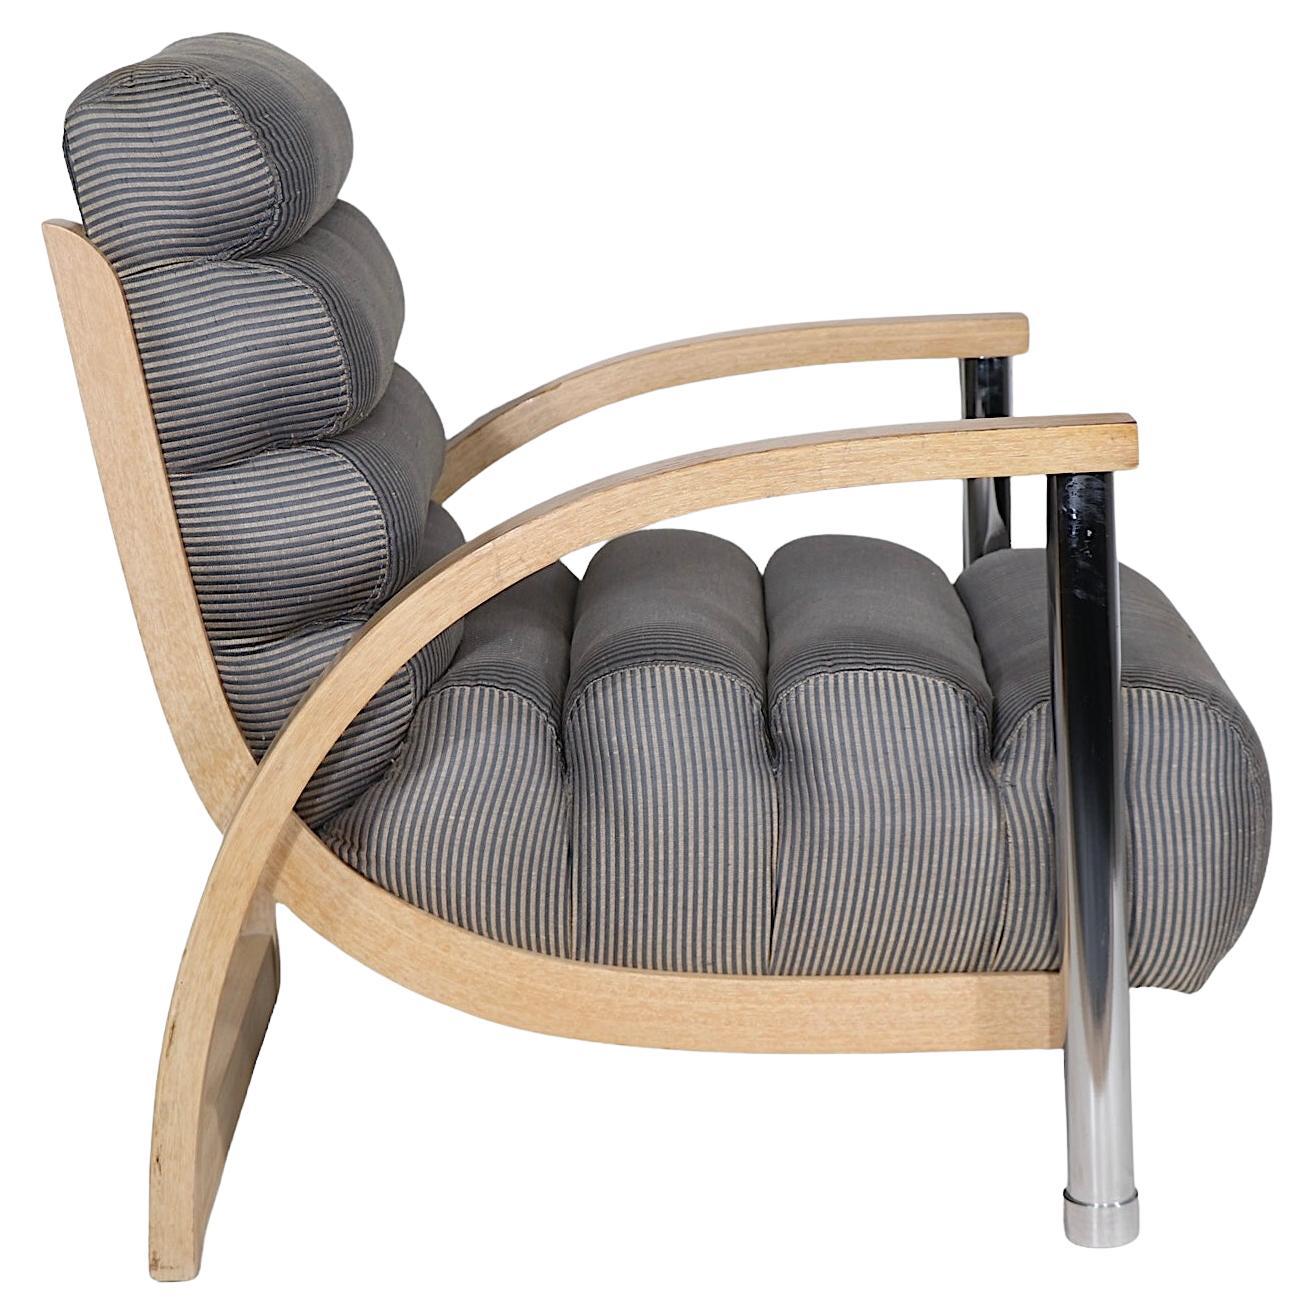 Chaise longue Eclipse postmoderne de Jay Specter pour Century Furniture vers 1970/80